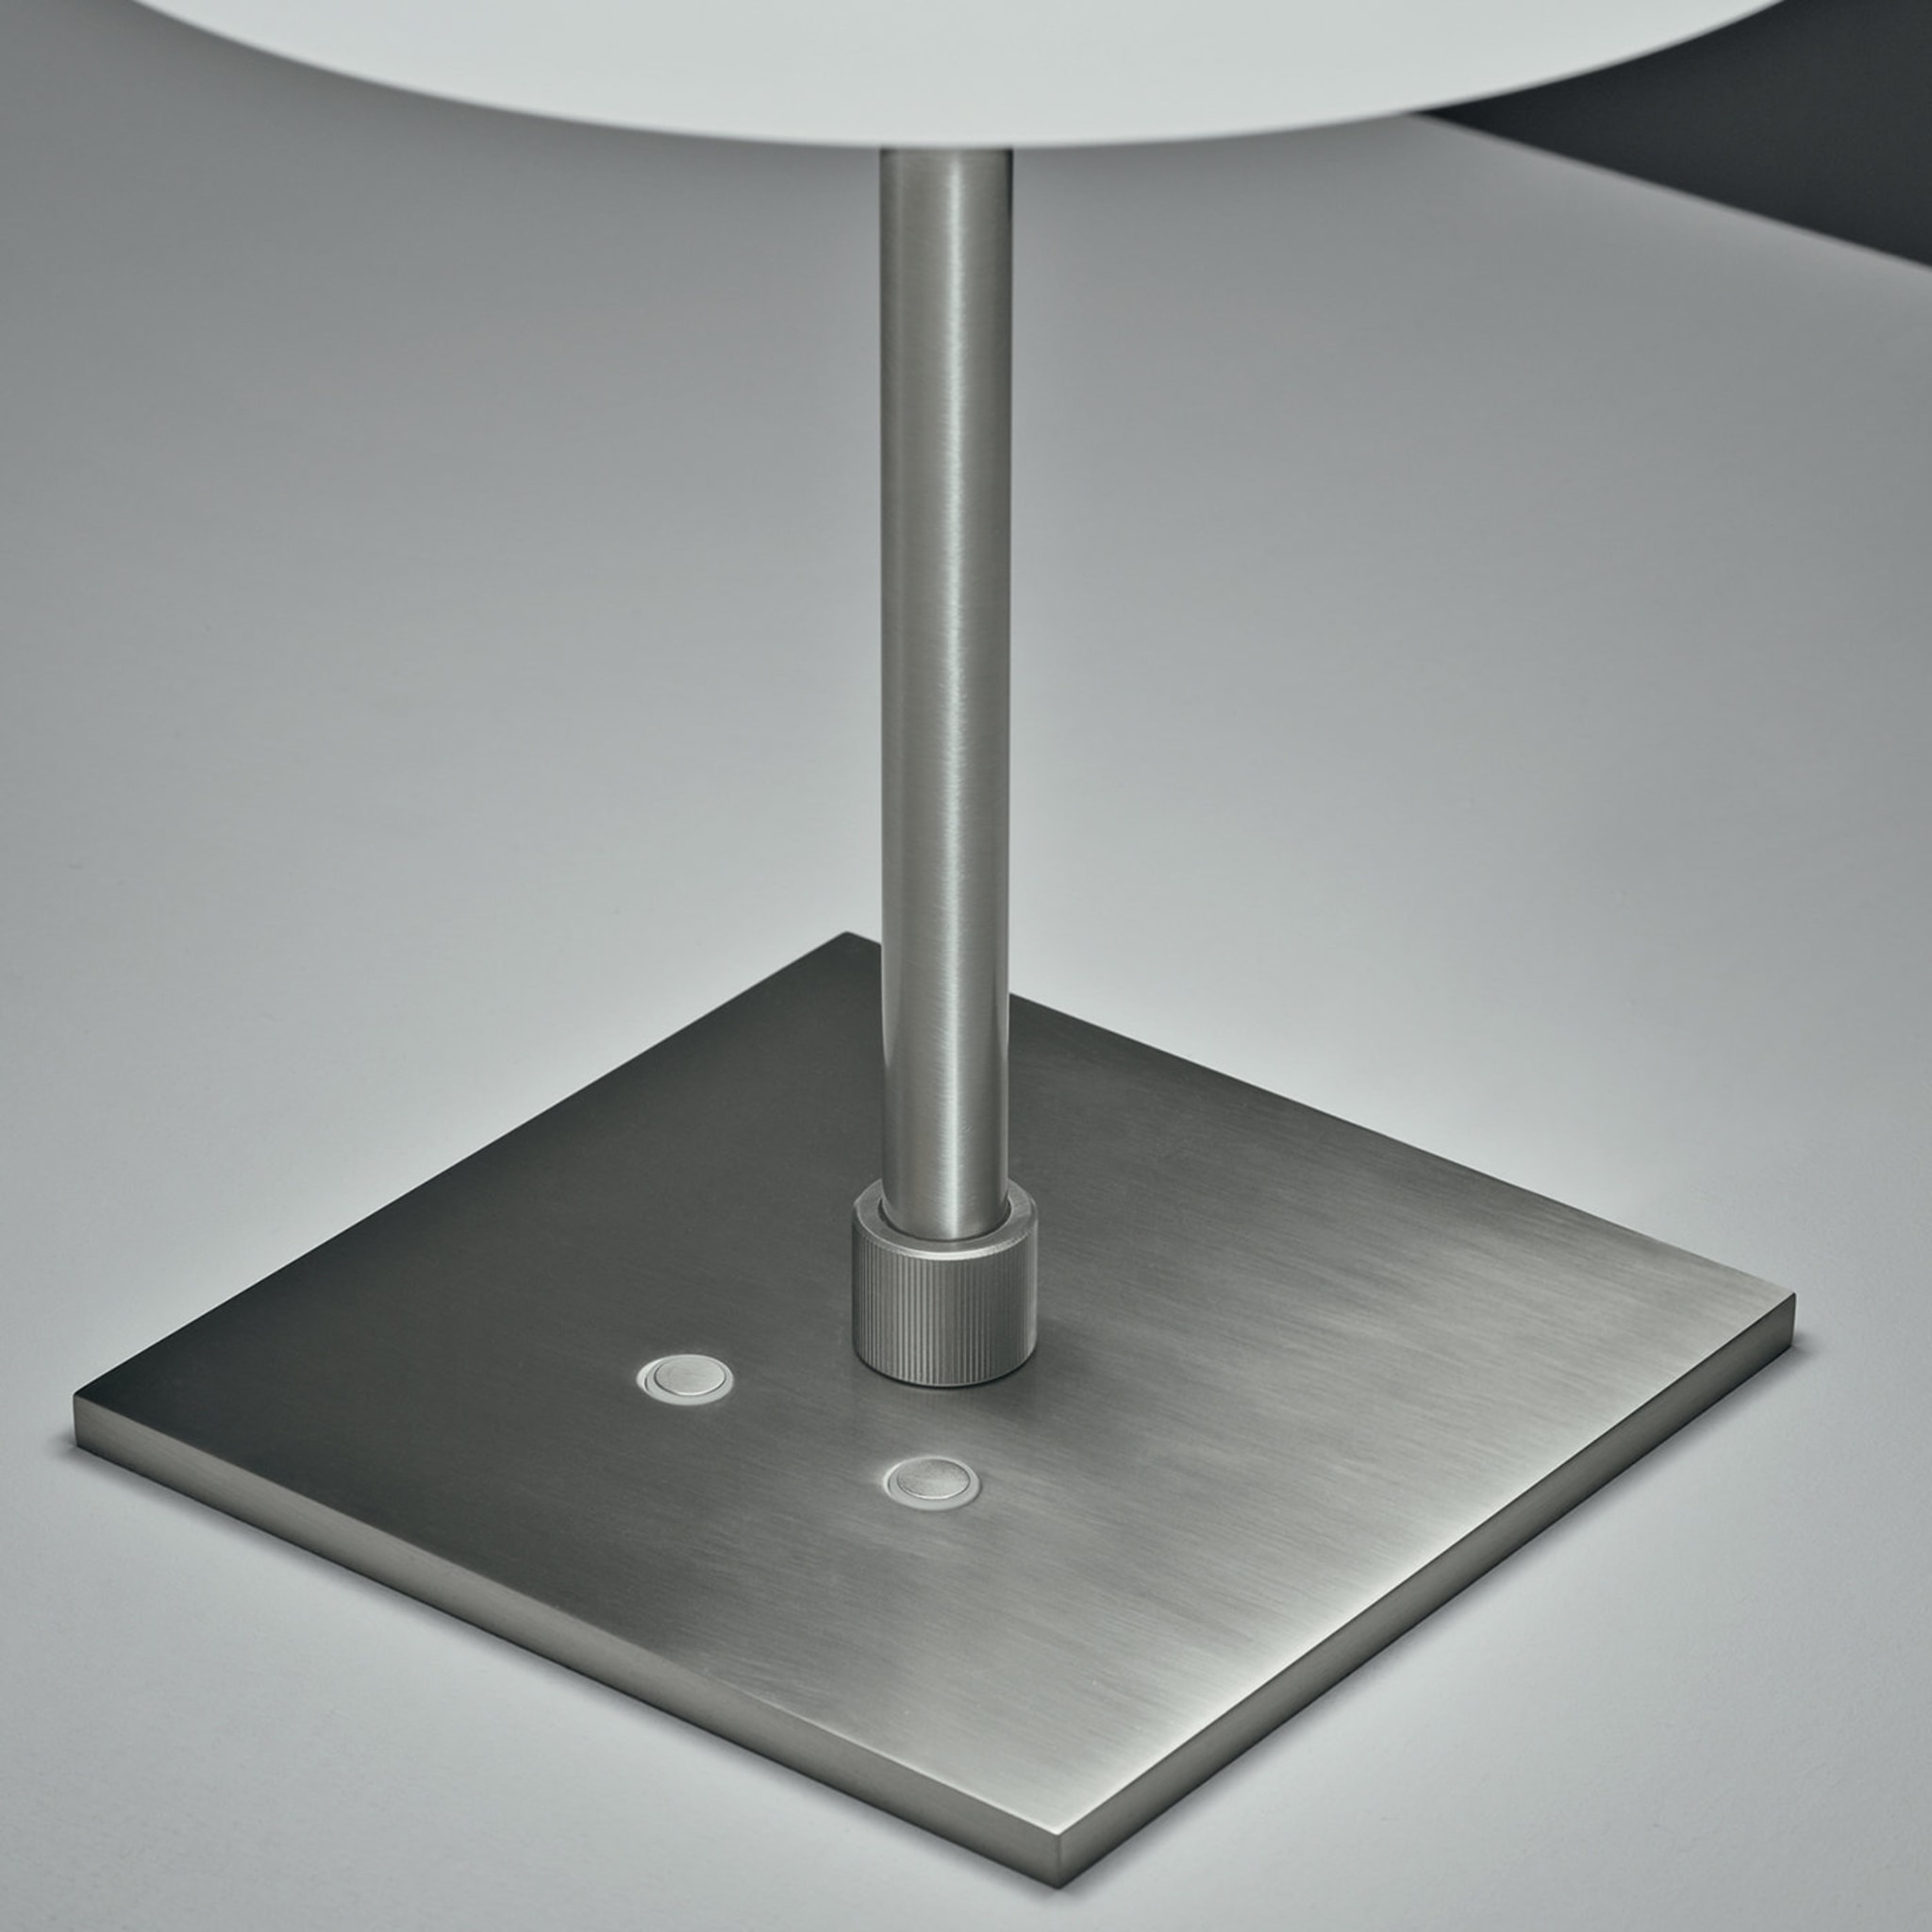 Boa Table Lamp by Carlo Guglielmini - Alternative view 1